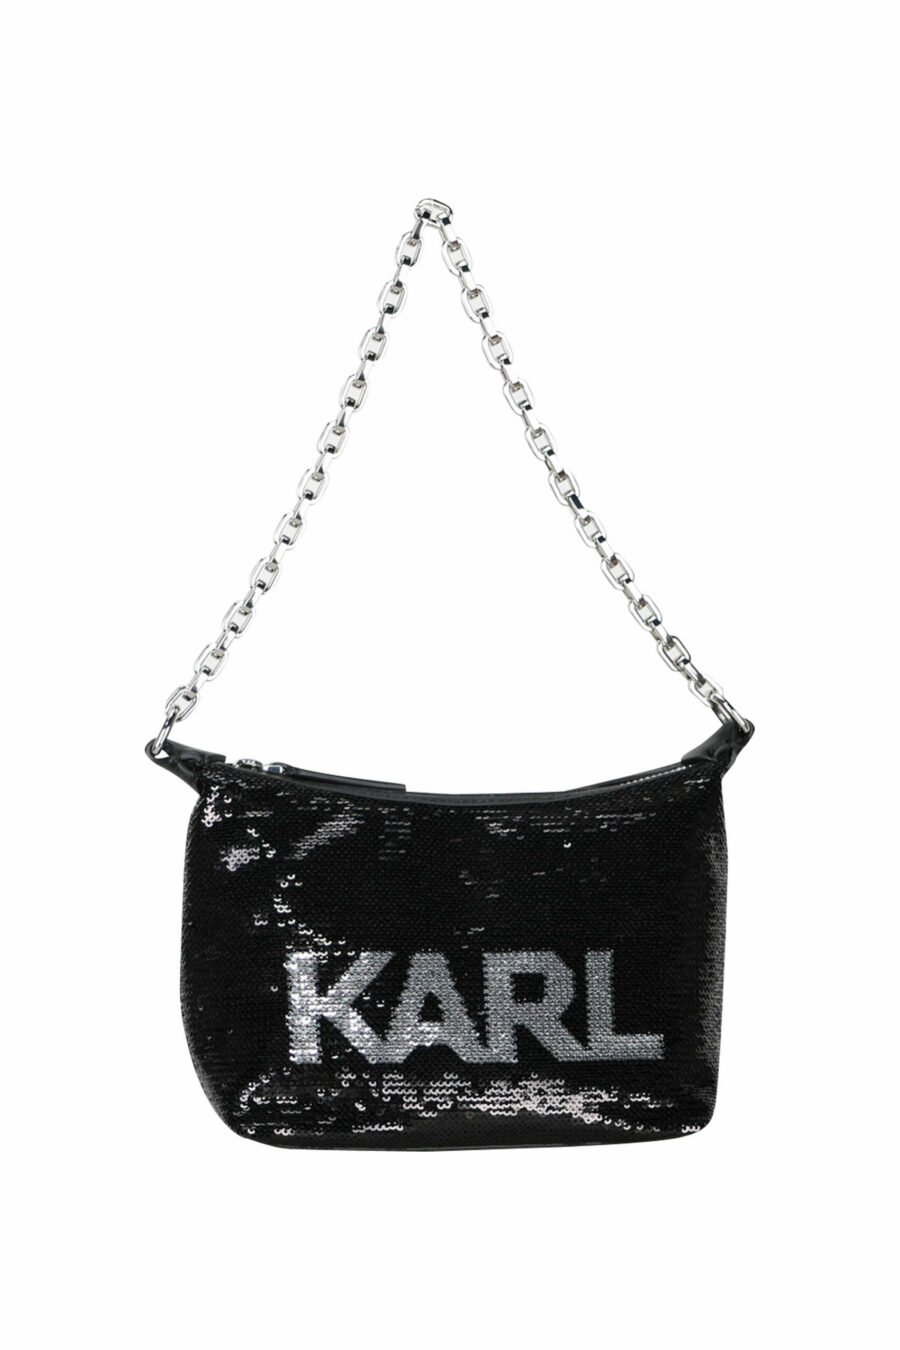 Black sequined shoulder bag with silver logo - 8720744416210 scaled